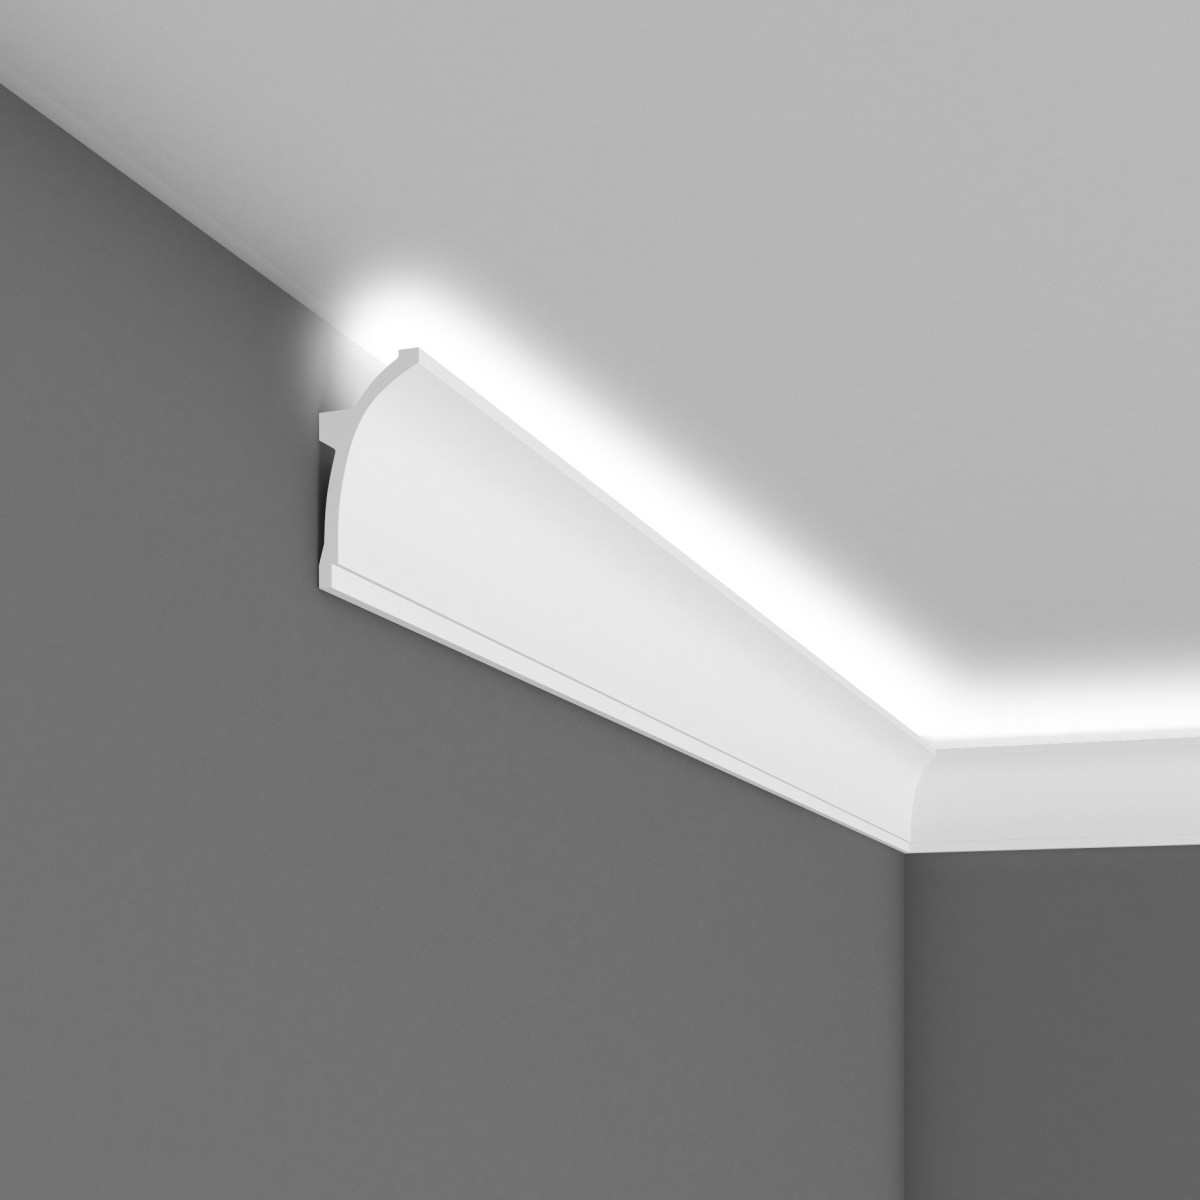 Cornisa decorativa pentru LED MDB100, 240 X 10 X 5 cm, Mardom Decor, Cornișe tavan 